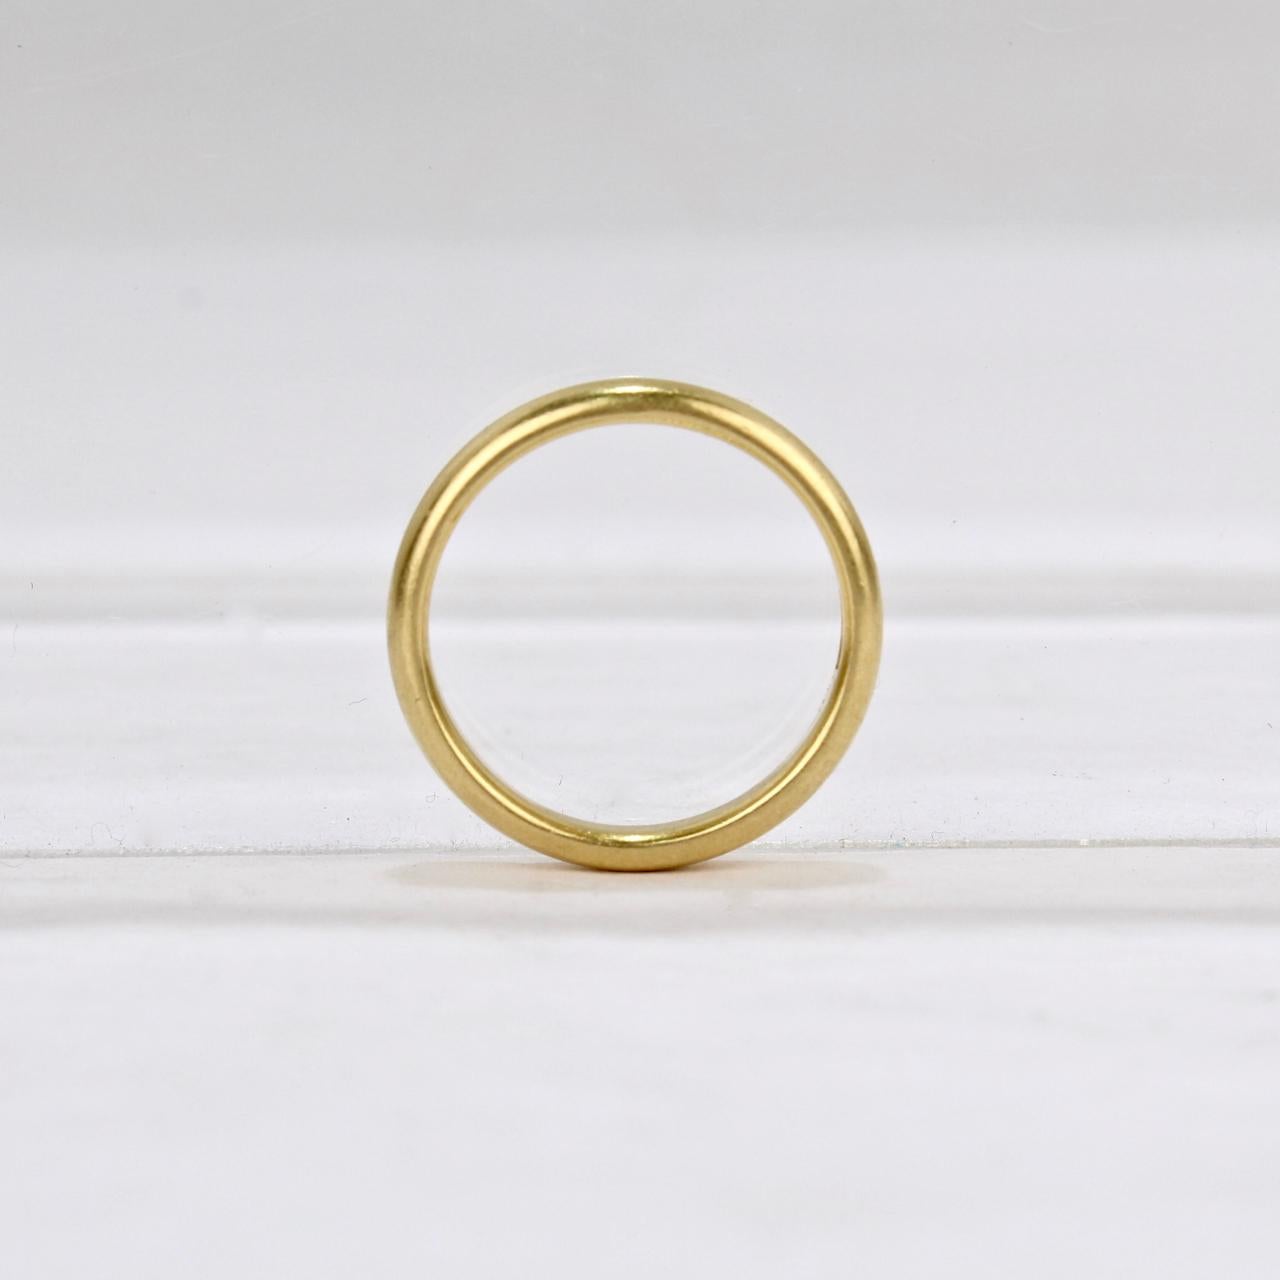 22 carat gold band ring